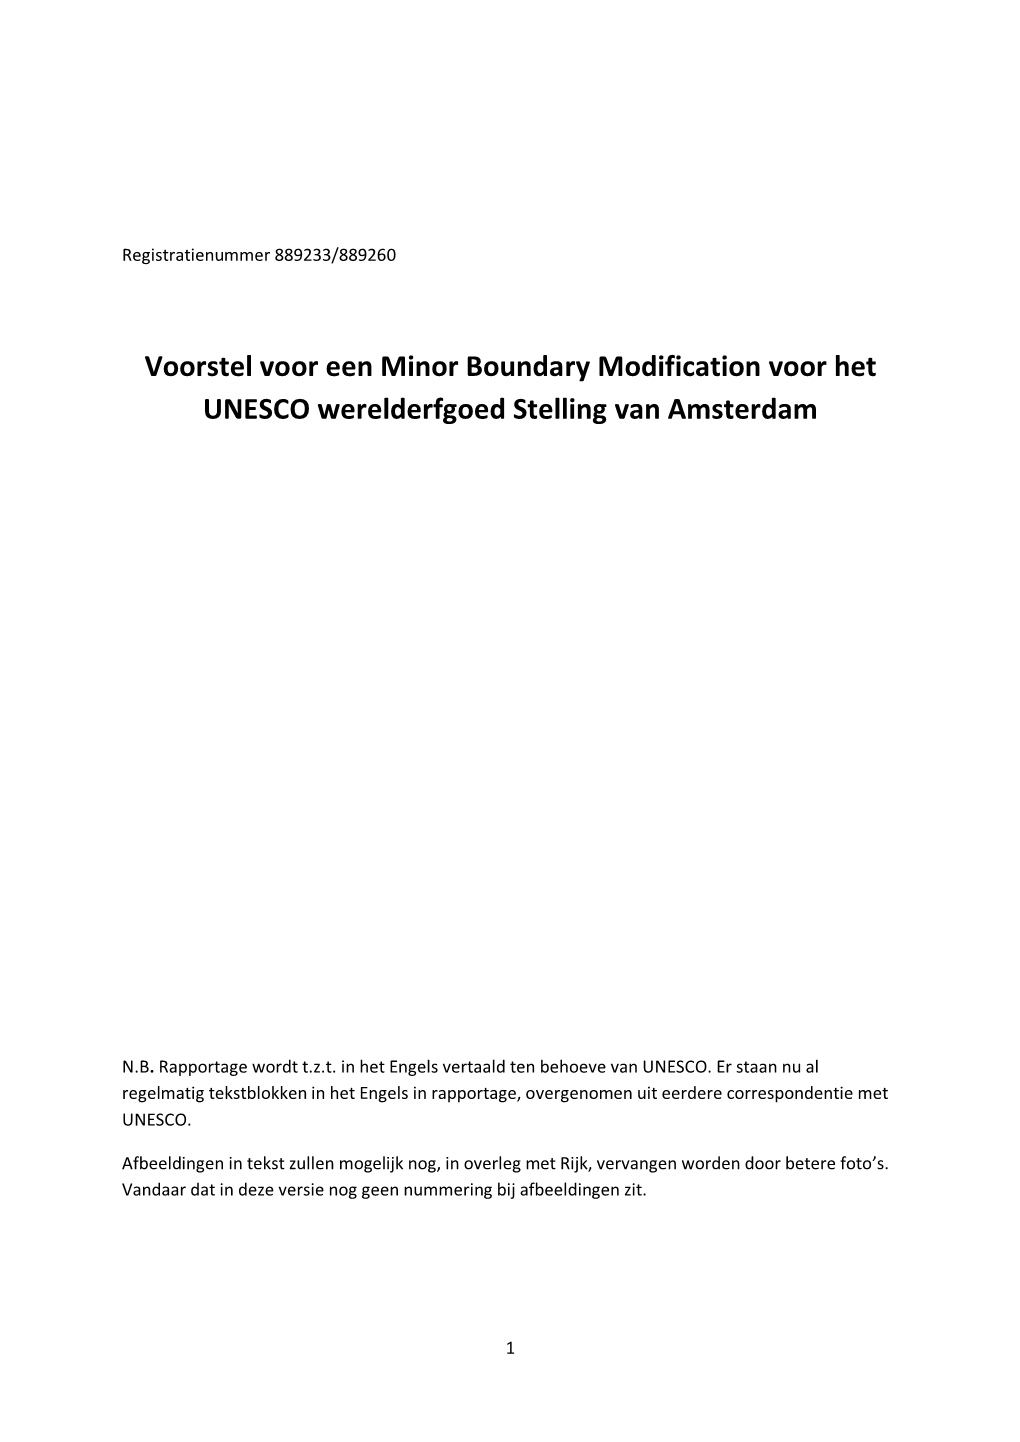 Voorstel Voor Een Minor Boundary Modification Voor Het UNESCO Werelderfgoed Stelling Van Amsterdam